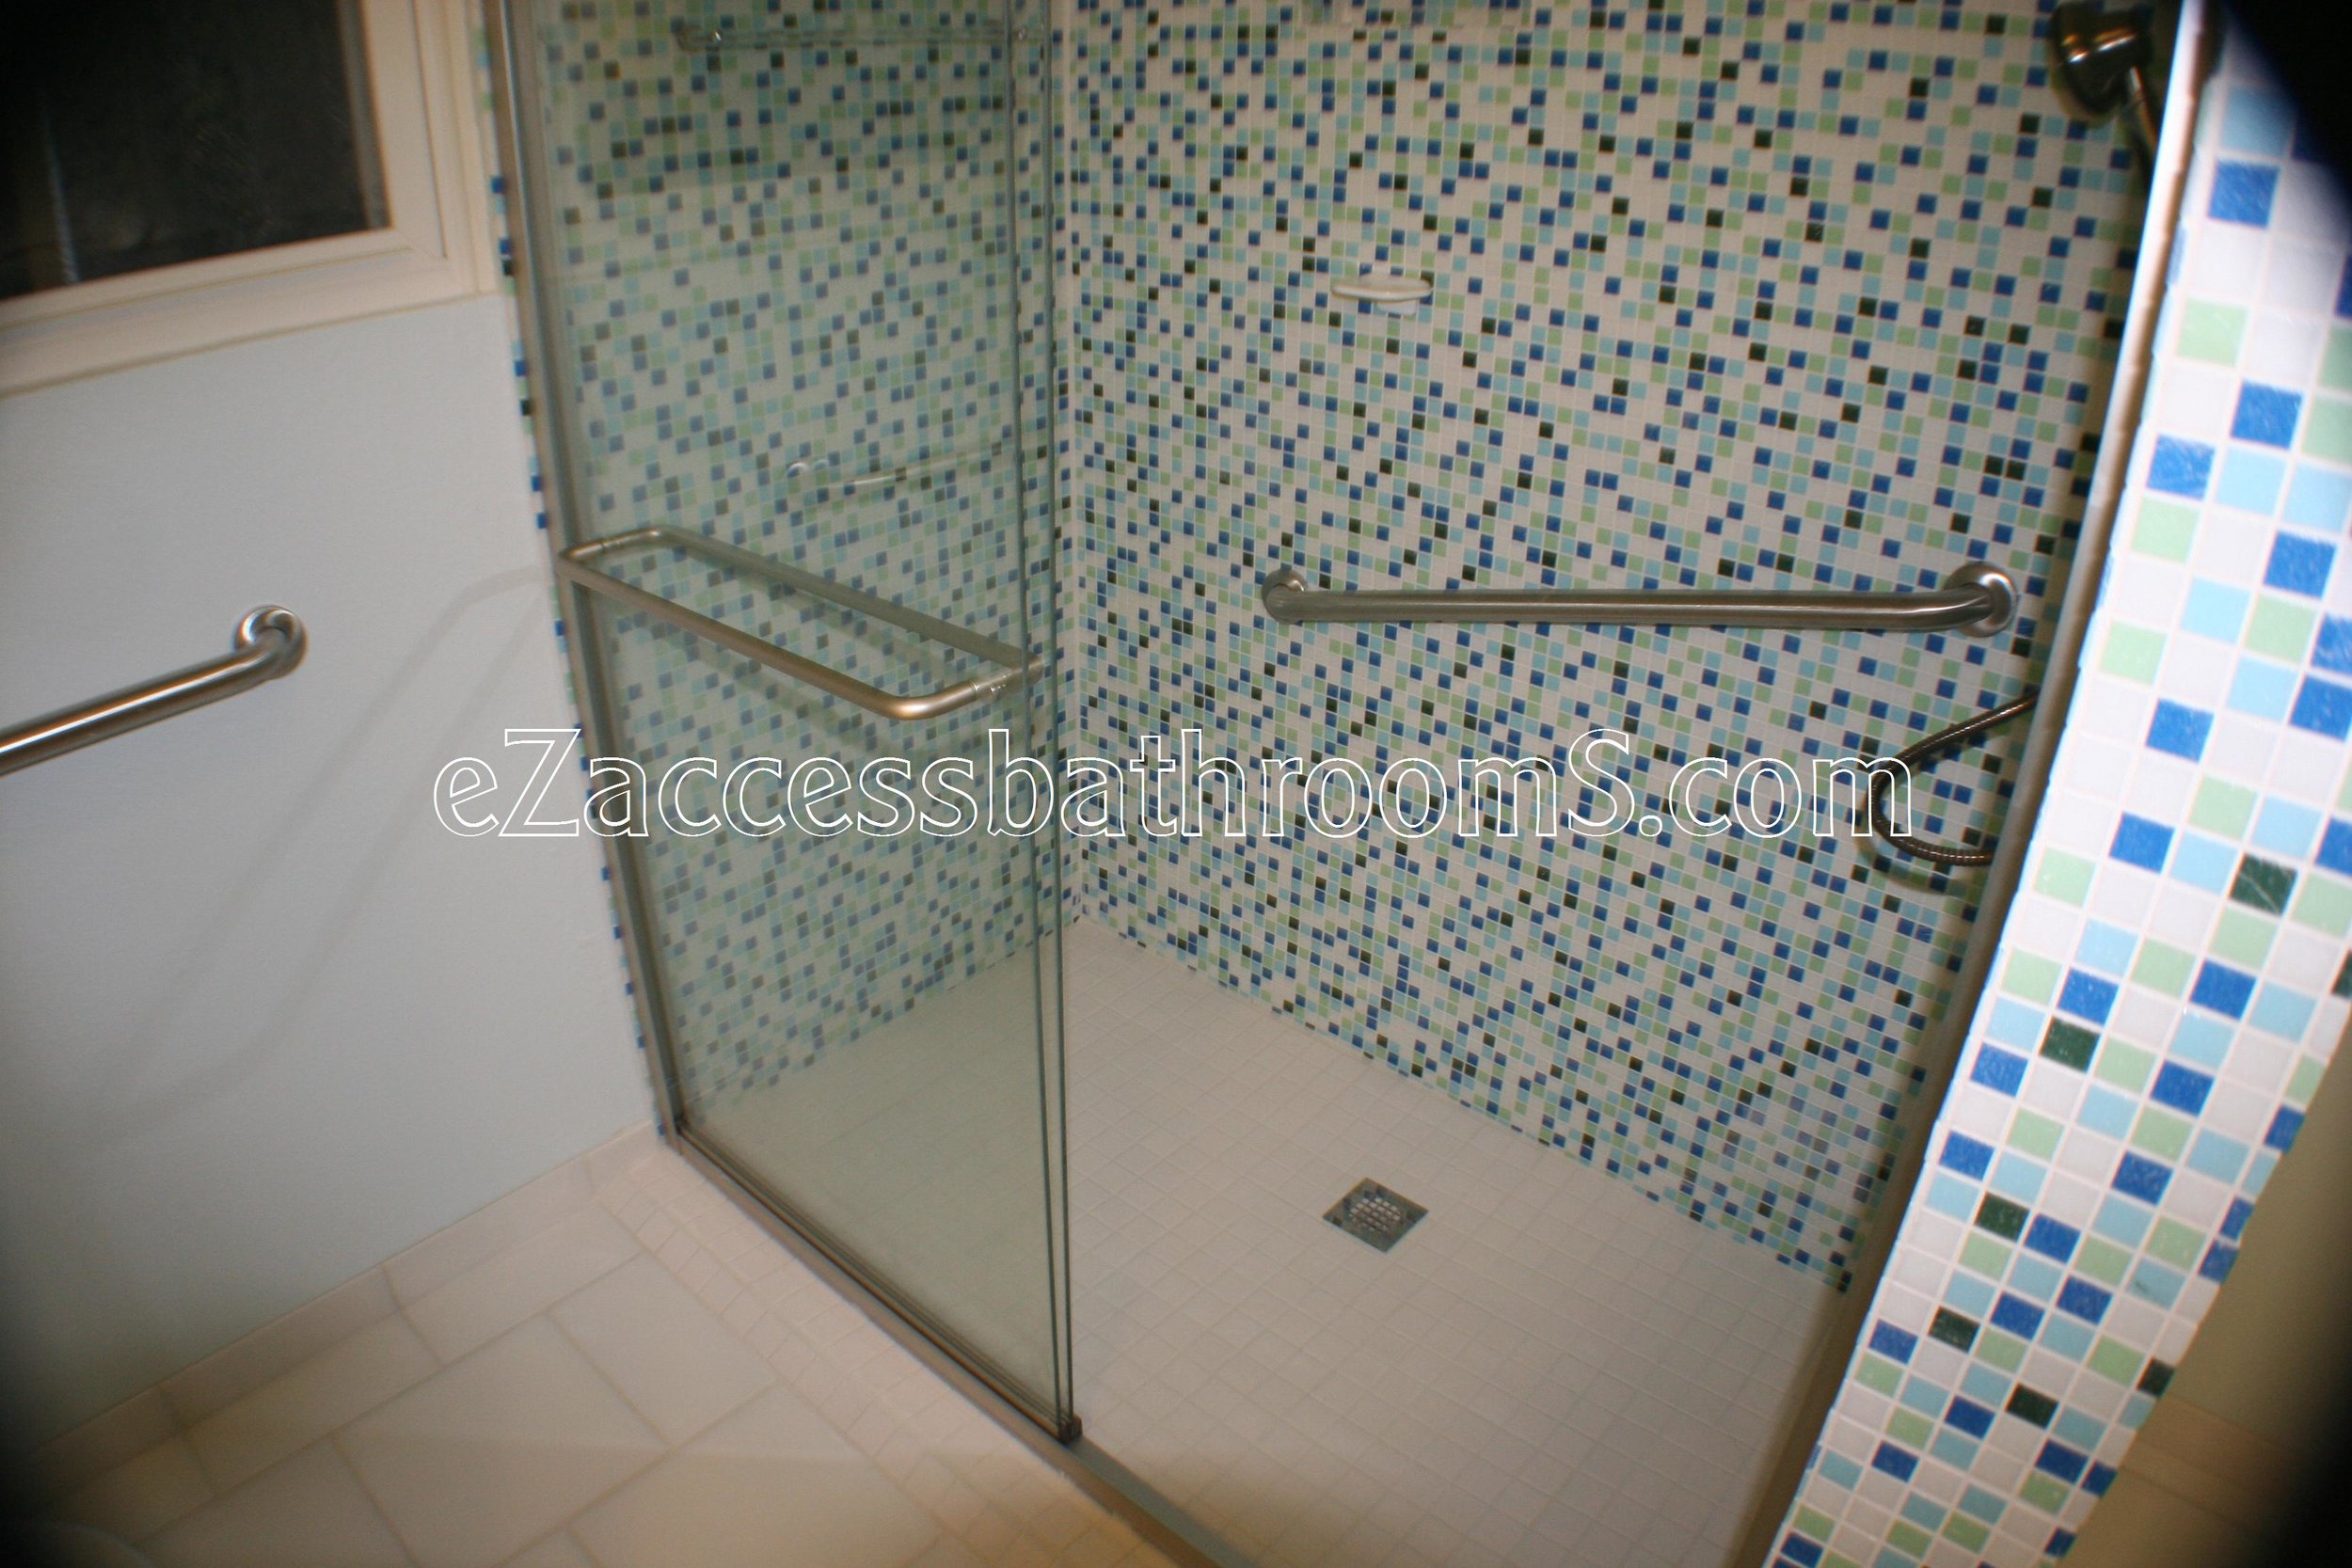 rollin shower ezaccessbathrooms.com 0038.JPG